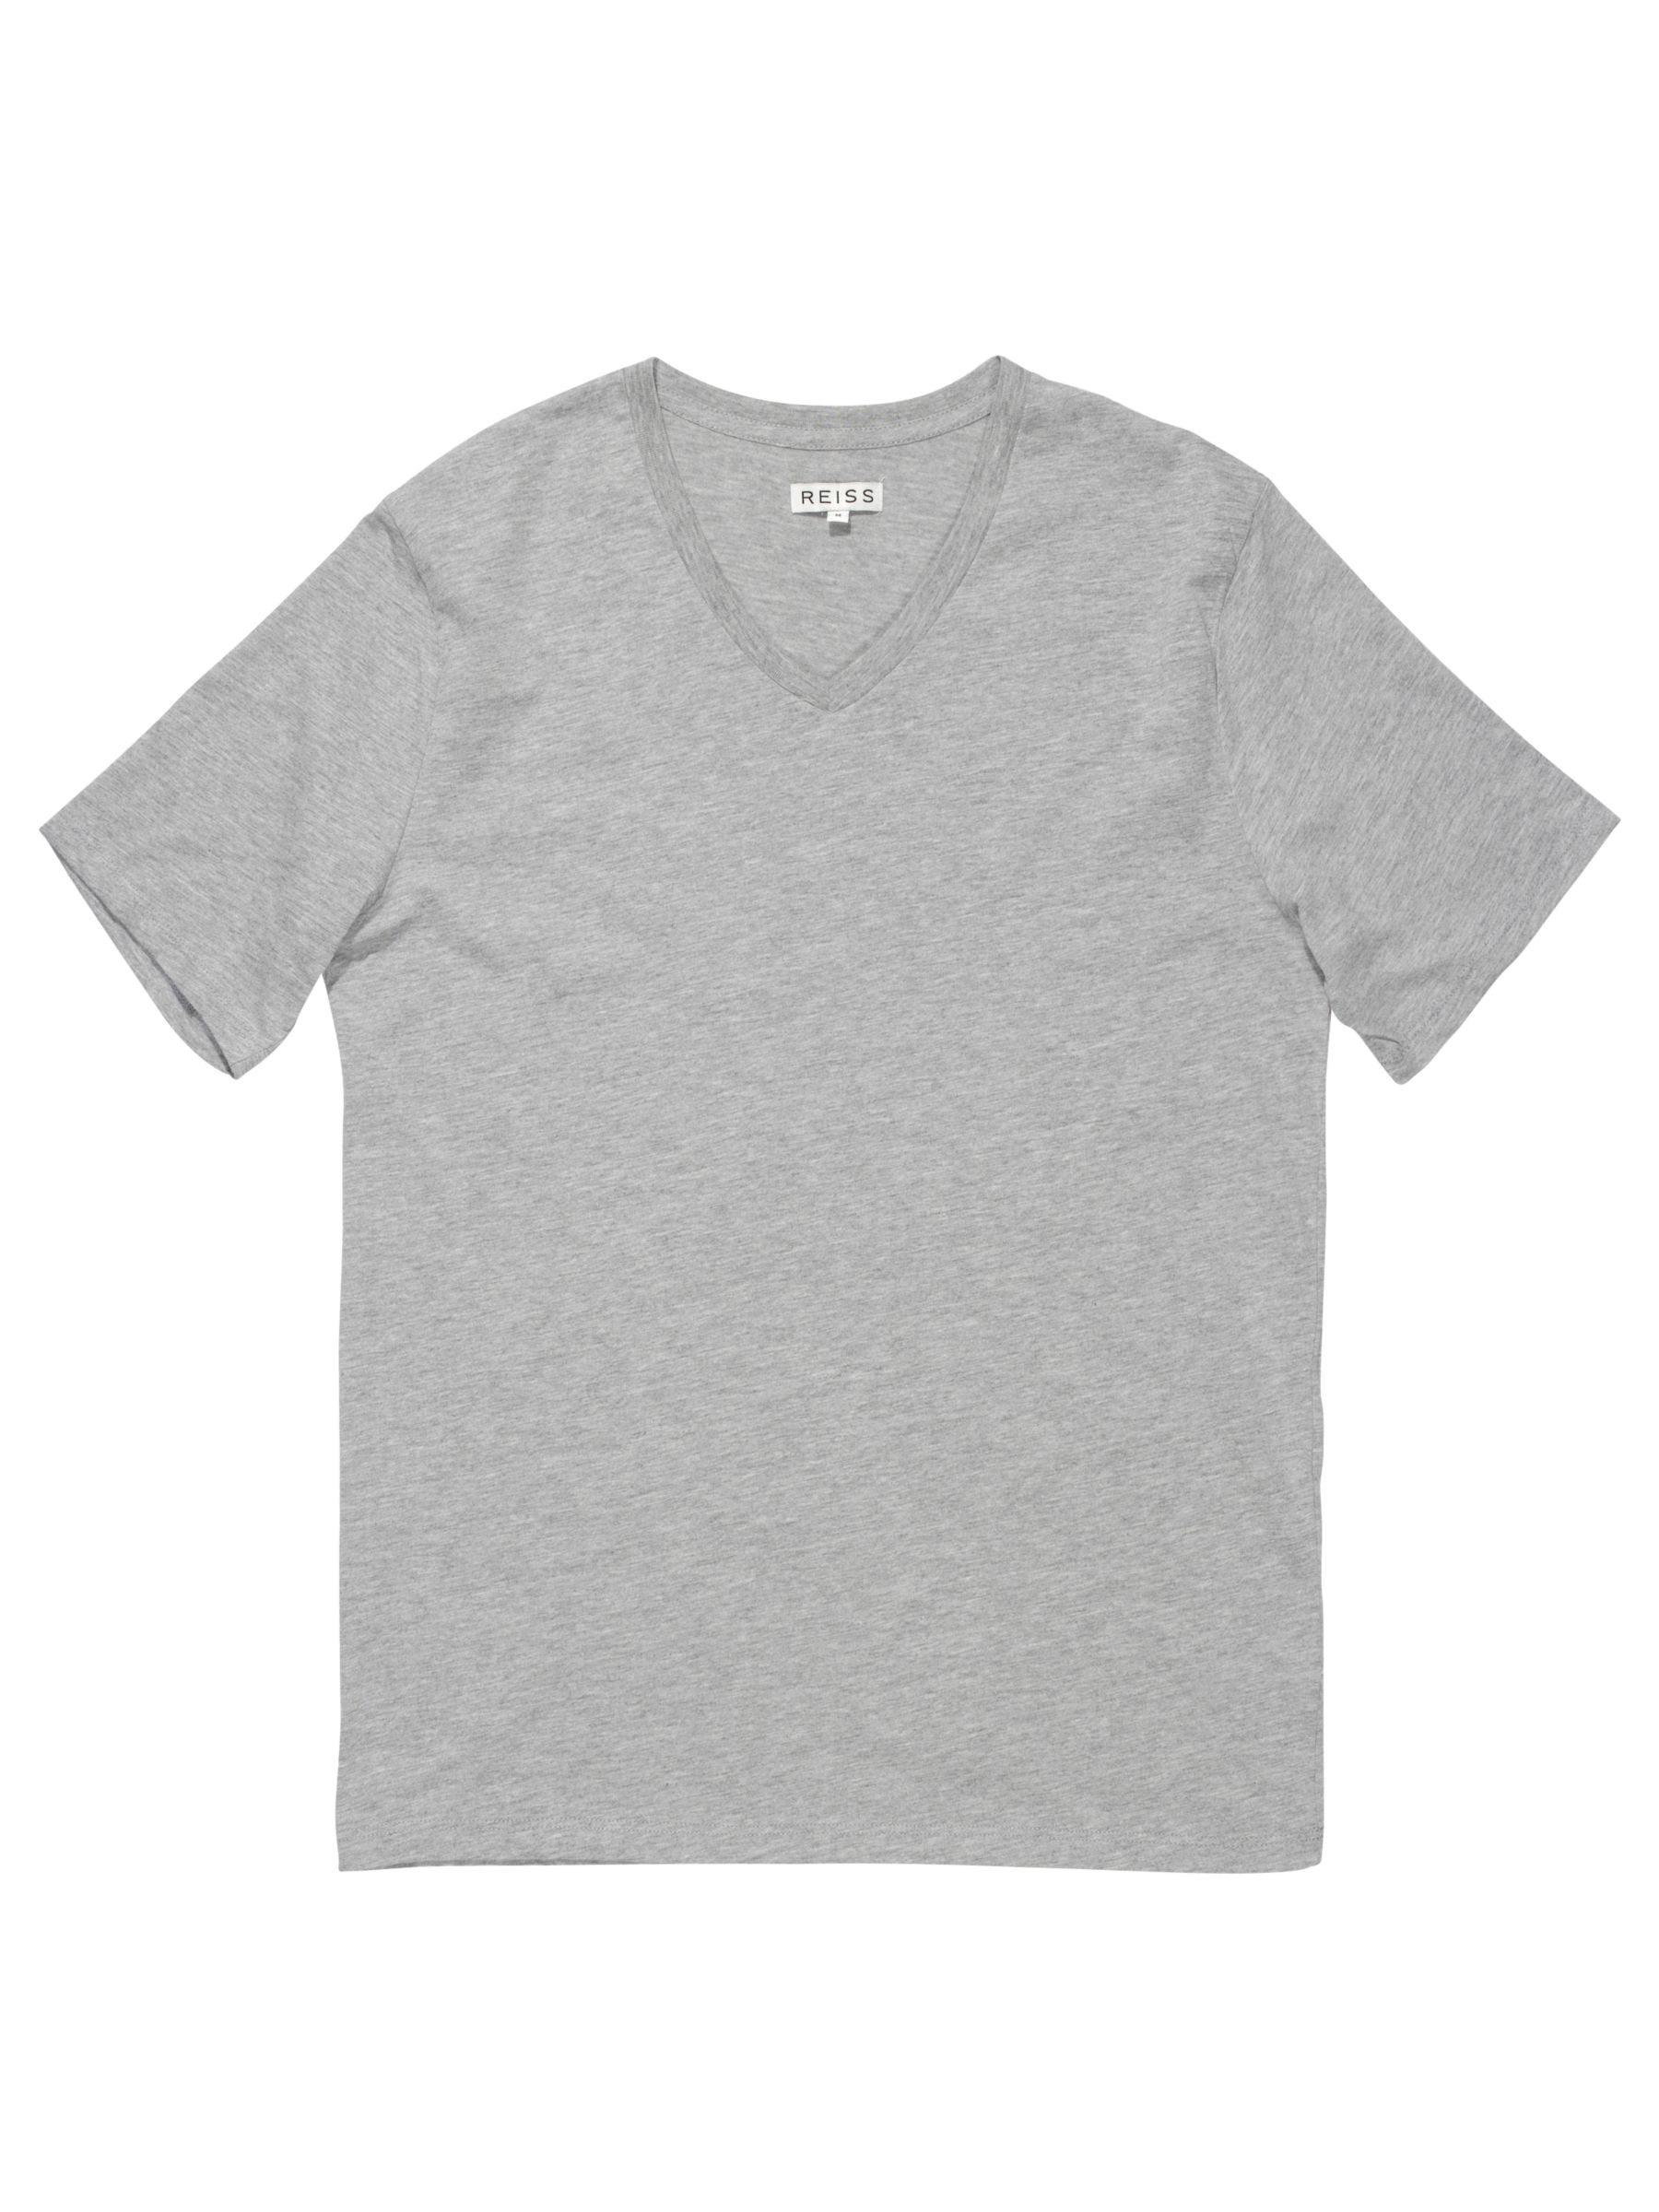 Reiss Dayton Basic V Neck T-Shirt, Light grey